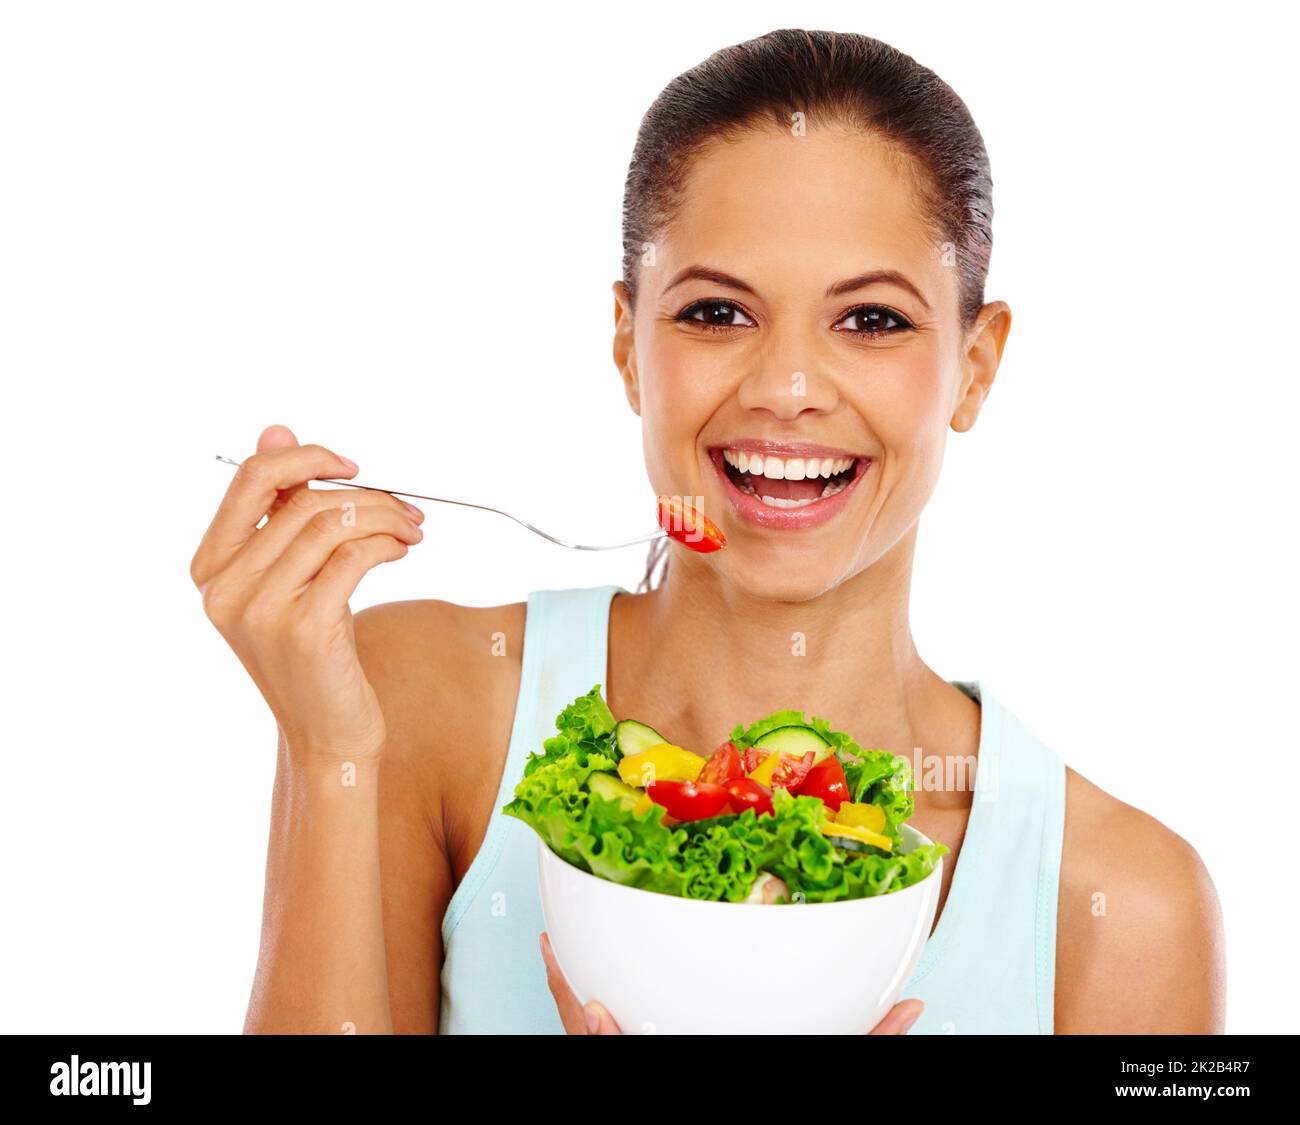 Manger sainement. Portrait d'une jeune femme attrayante mangeant une salade saine. Banque D'Images